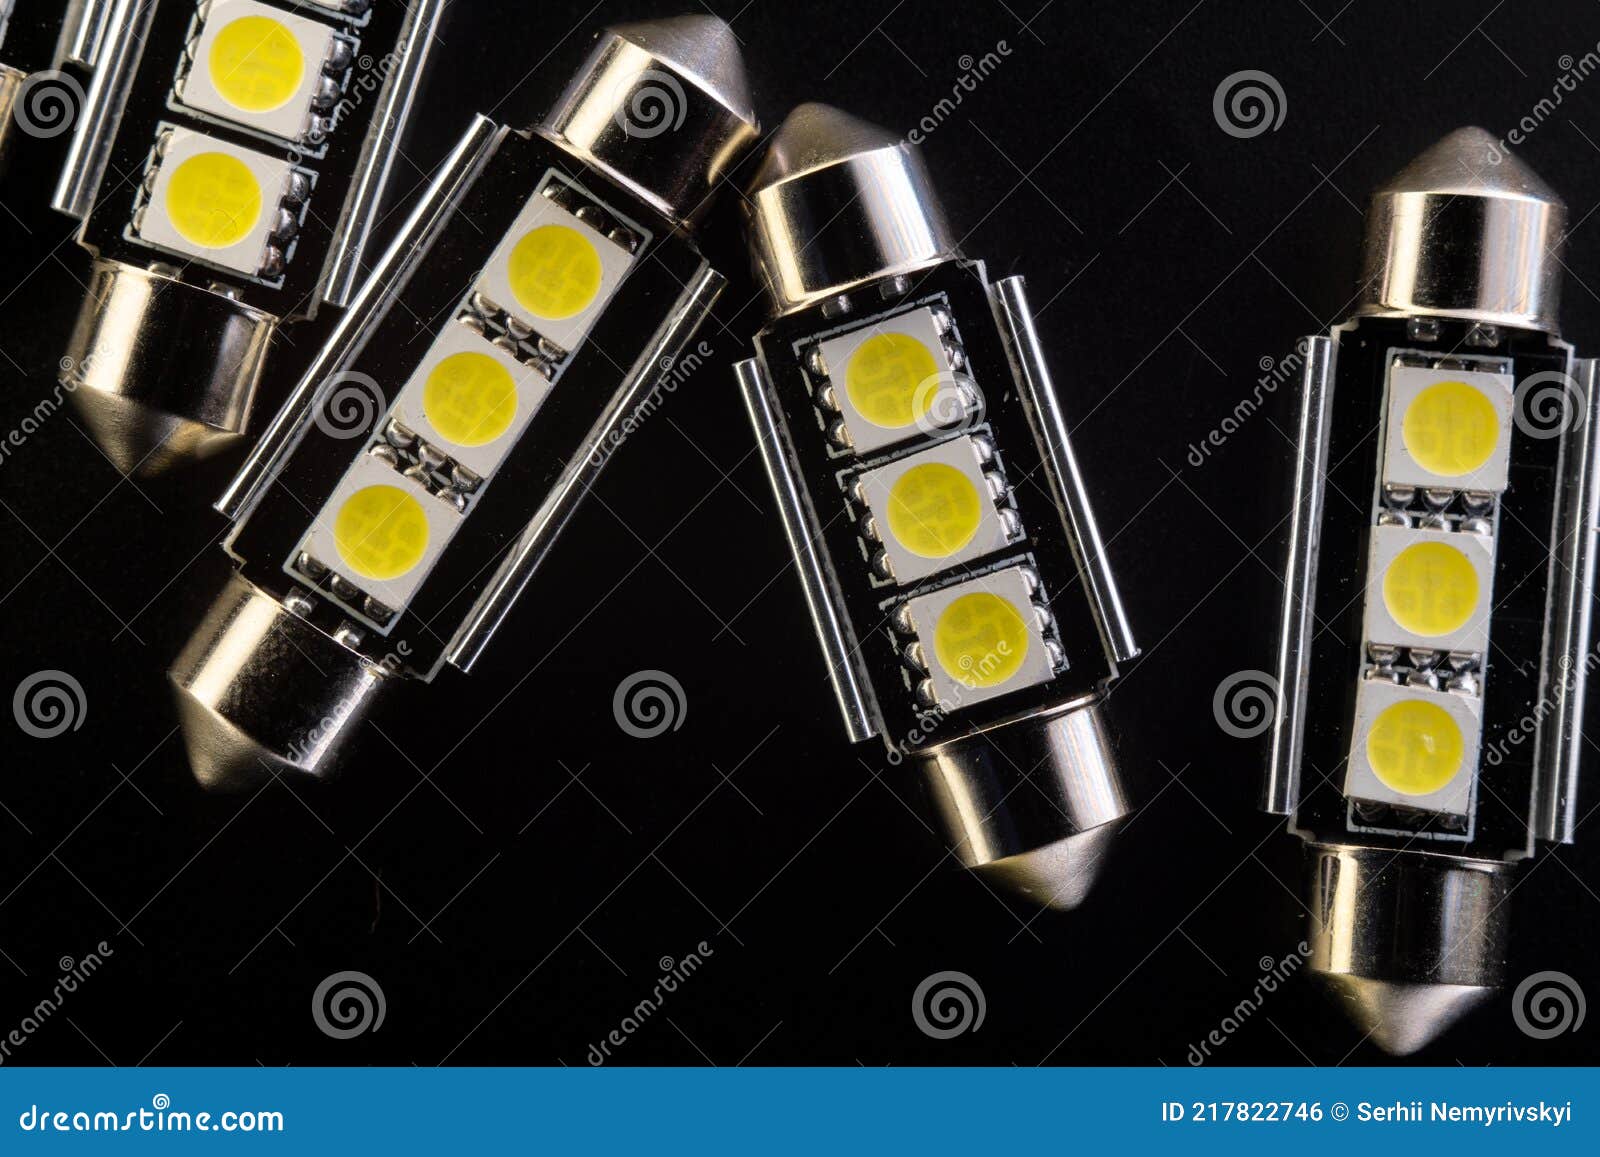 Viel Auto Glühbirnen Emittierende Dioden Zubehör Und Komponenten